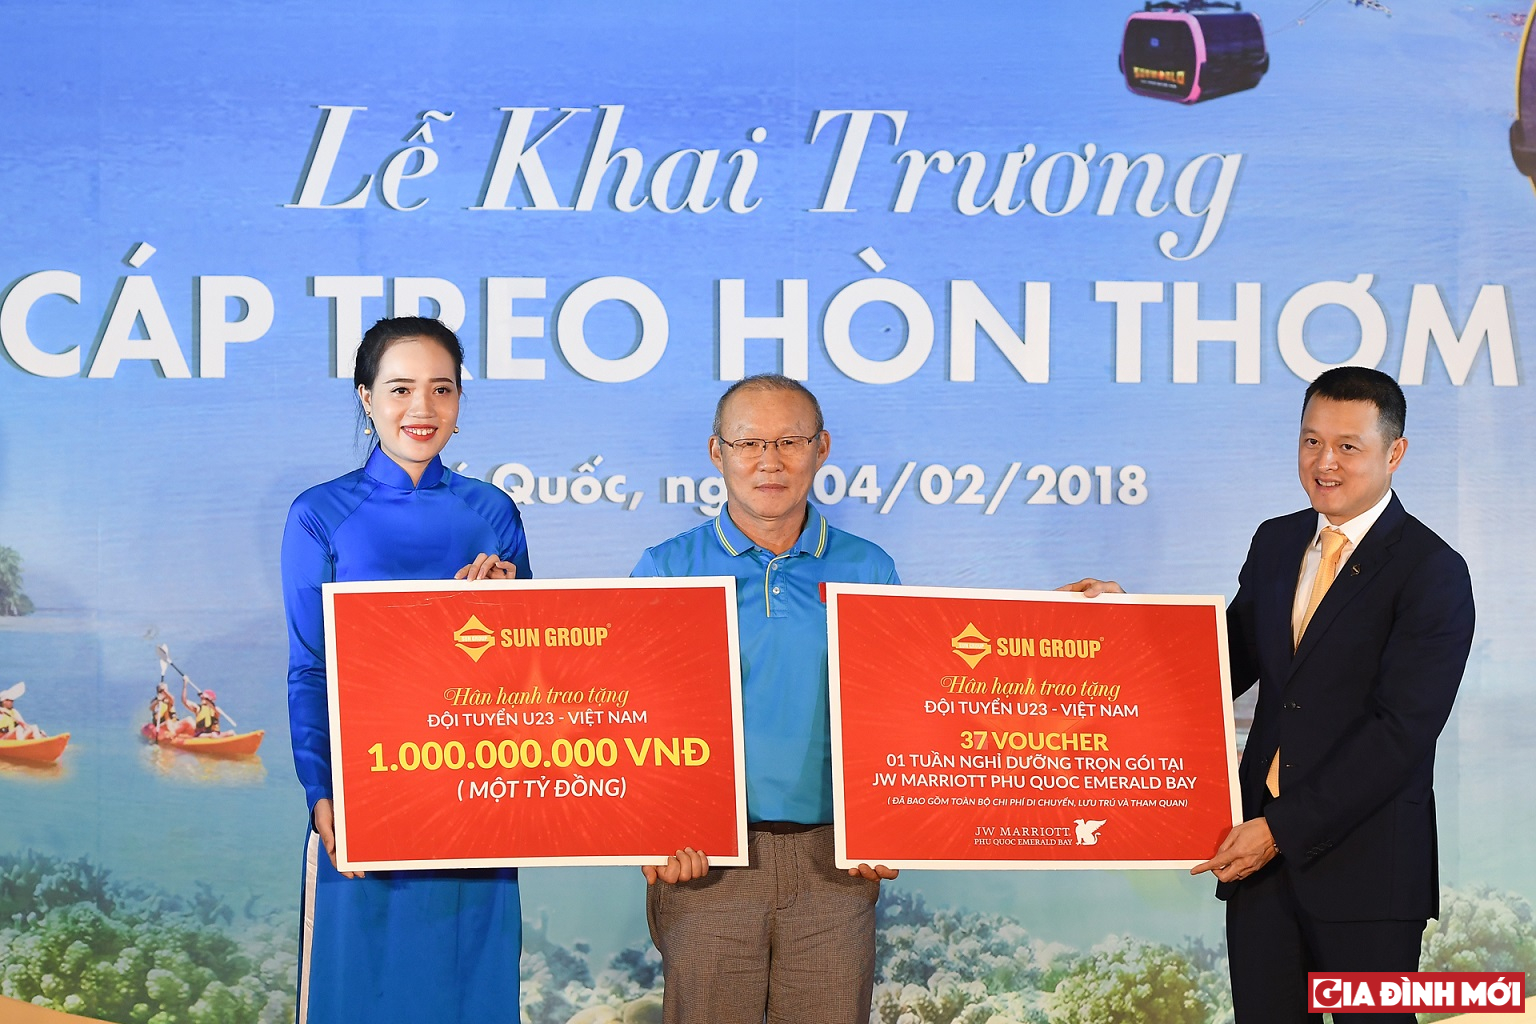 HLV Park đại diện U23 Việt Nam nhận quà tặng 1 tỷ đồng và voucher nghỉ dưỡng do Sun Group trao tặng.